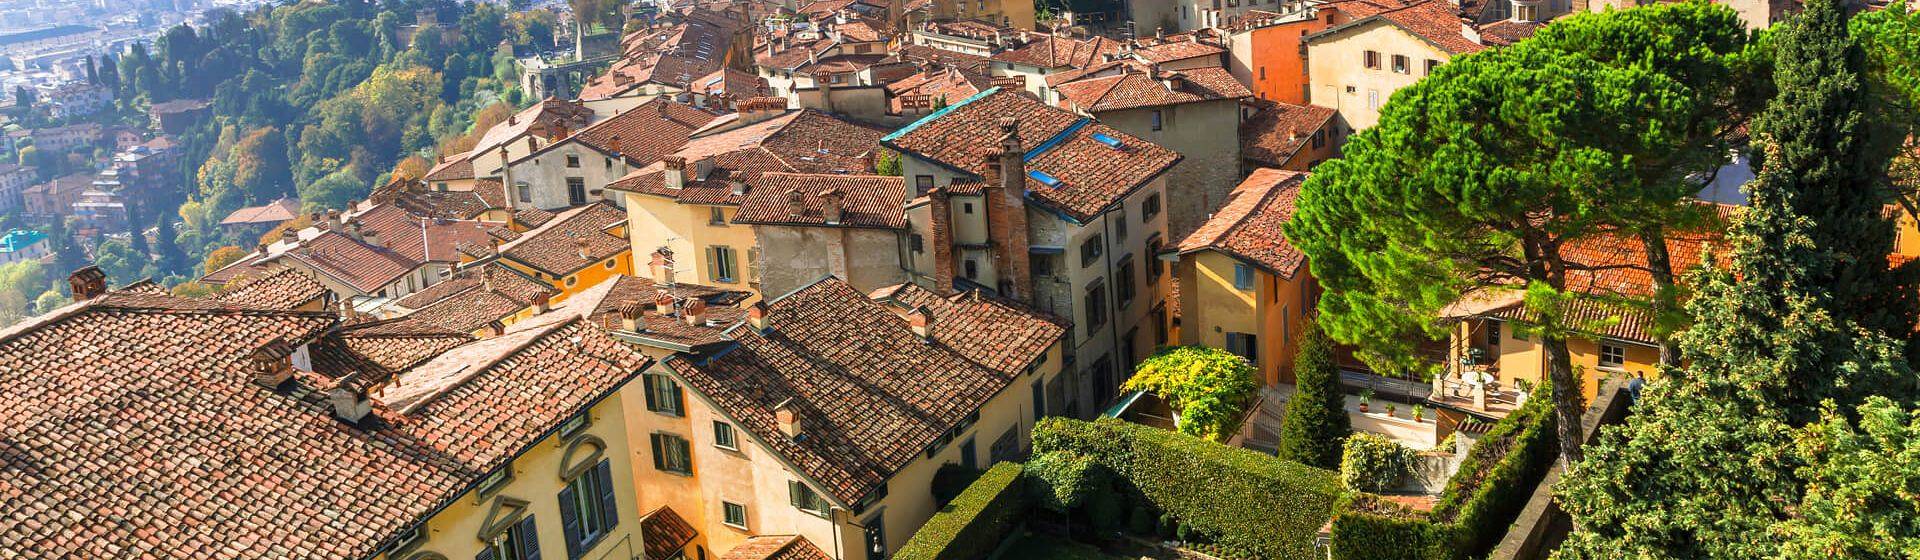 Holidays to Bergamo Image